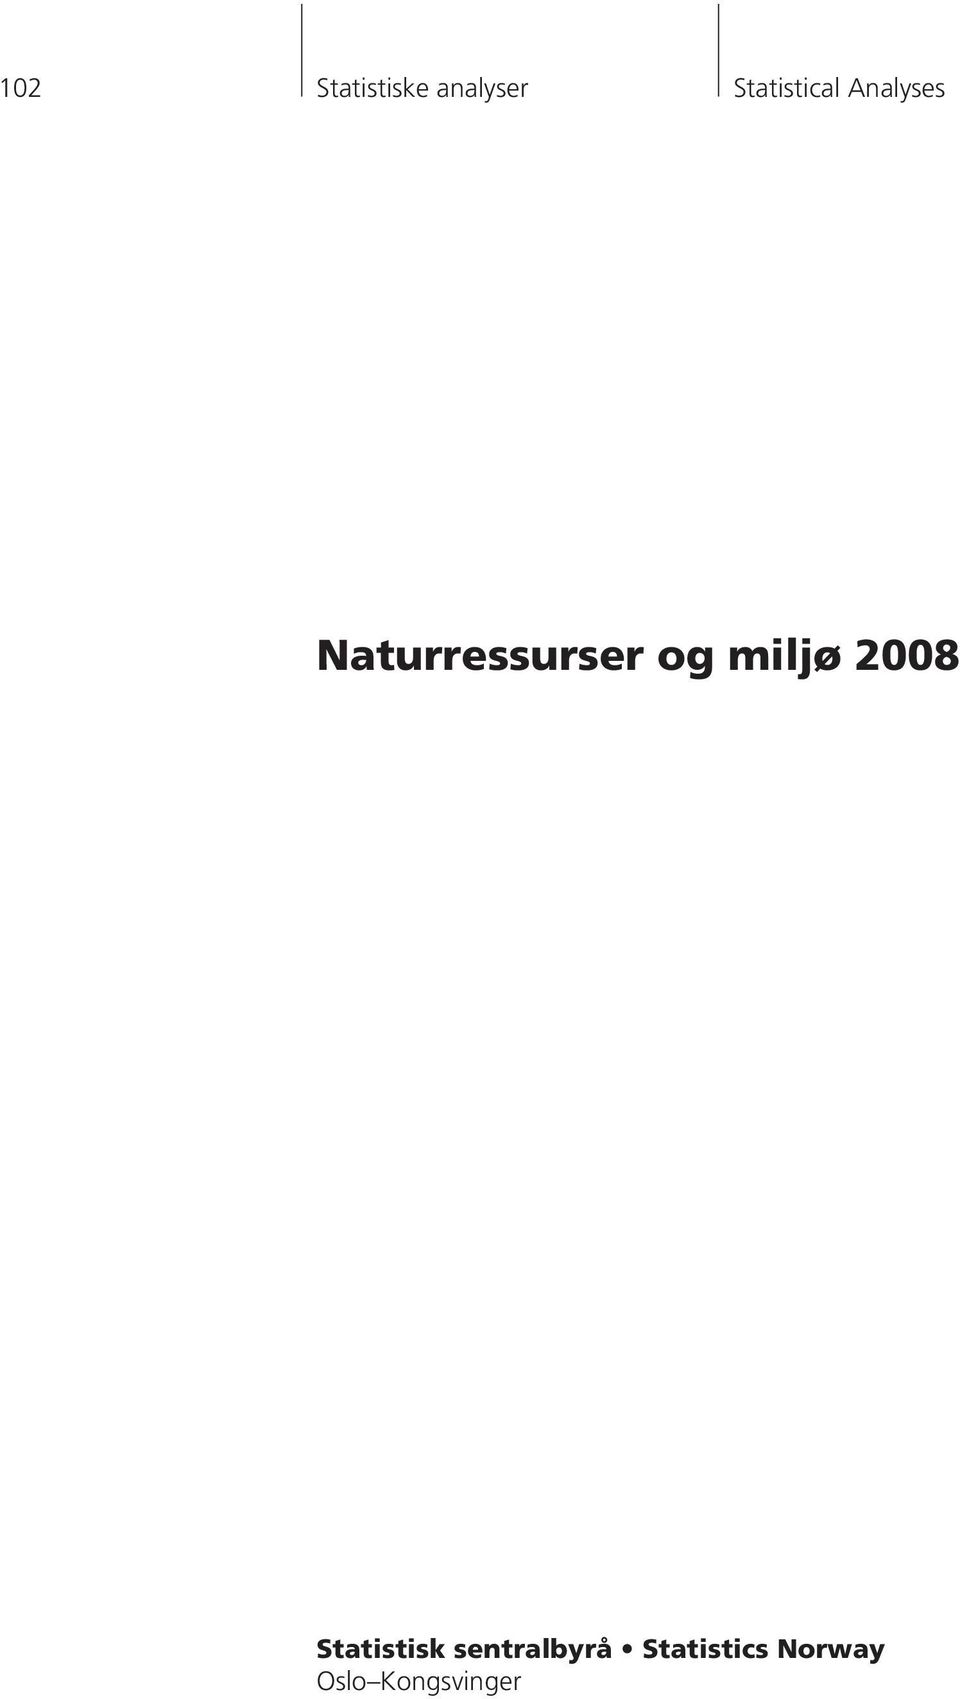 Naturressurser og miljø 2008